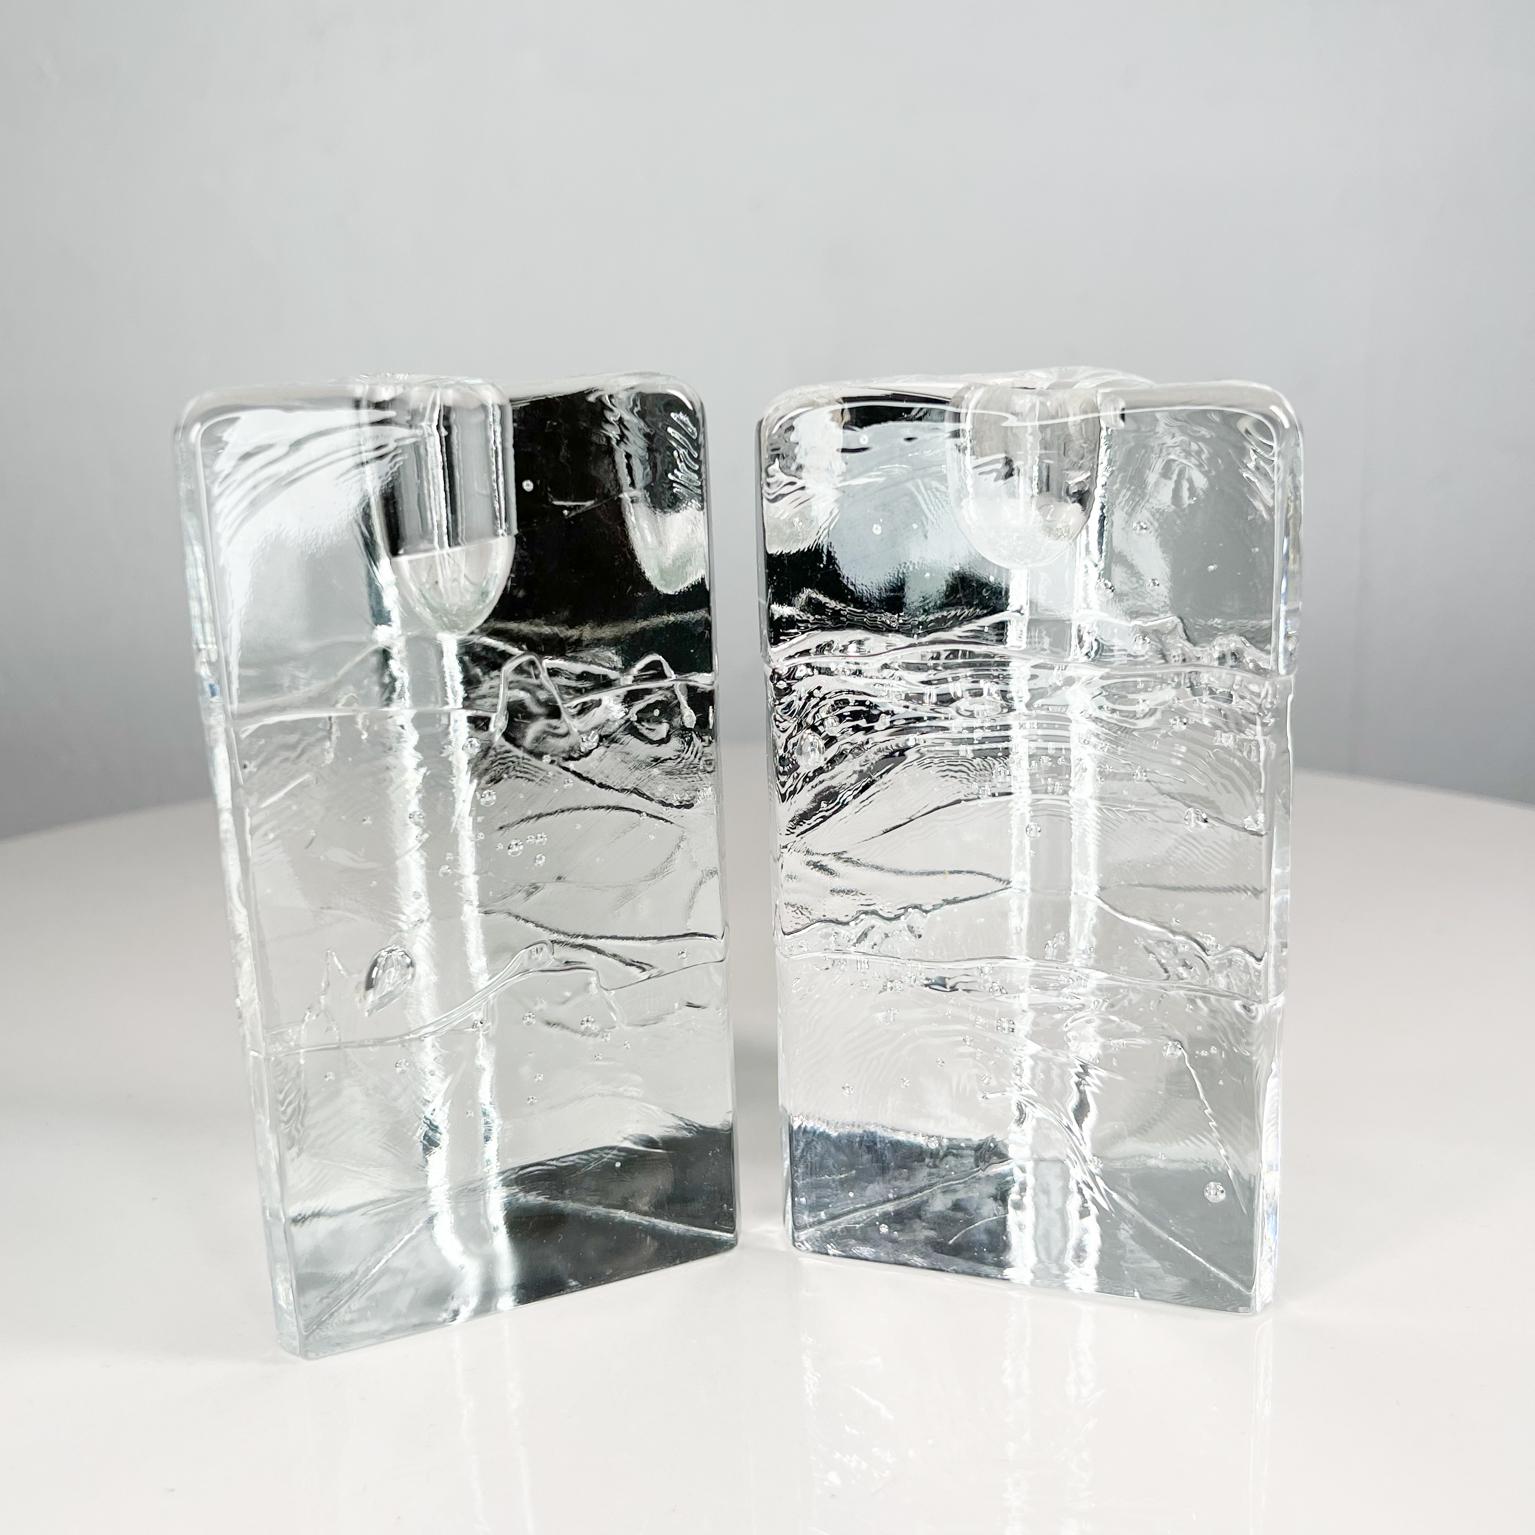 Bougeoirs Icicle en verre Arkipelago des années 1970 Timo Sarpaneva Iittala Finlande.
Cette paire triangulaire de bougeoirs en verre moulé fait partie de la ligne Arkipelago, conçue par Timo Sarpaneva et produite par la société finlandaise Iittala.